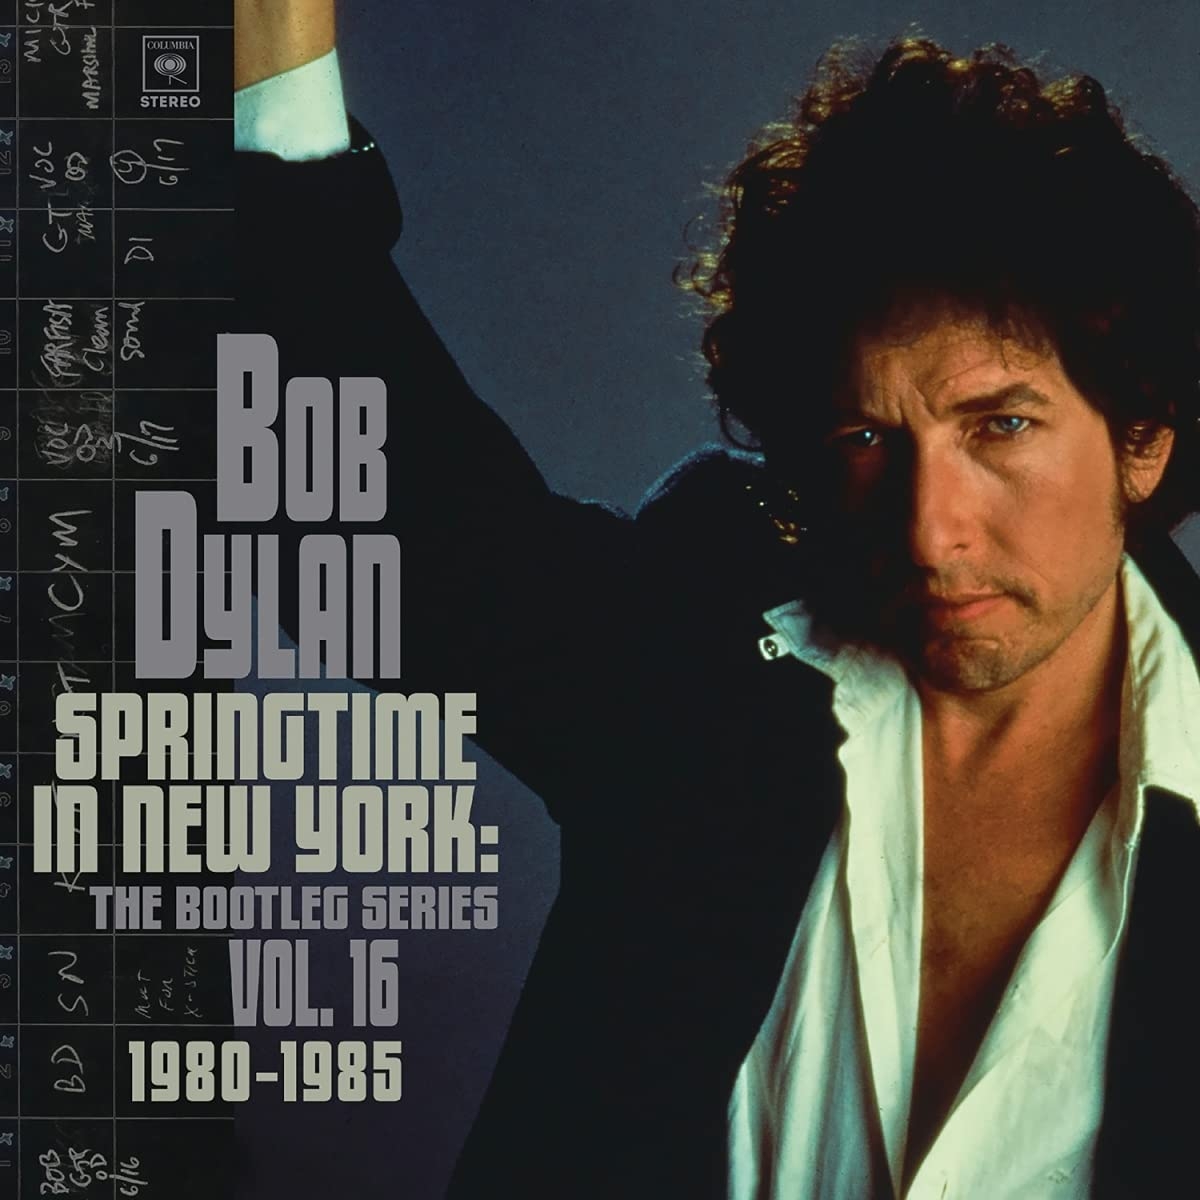 Рок Sony Bob Dylan - Springtime In New York: The Bootleg Series Vol. 16 (1980-1985) (Black Vinyl/Booklet)